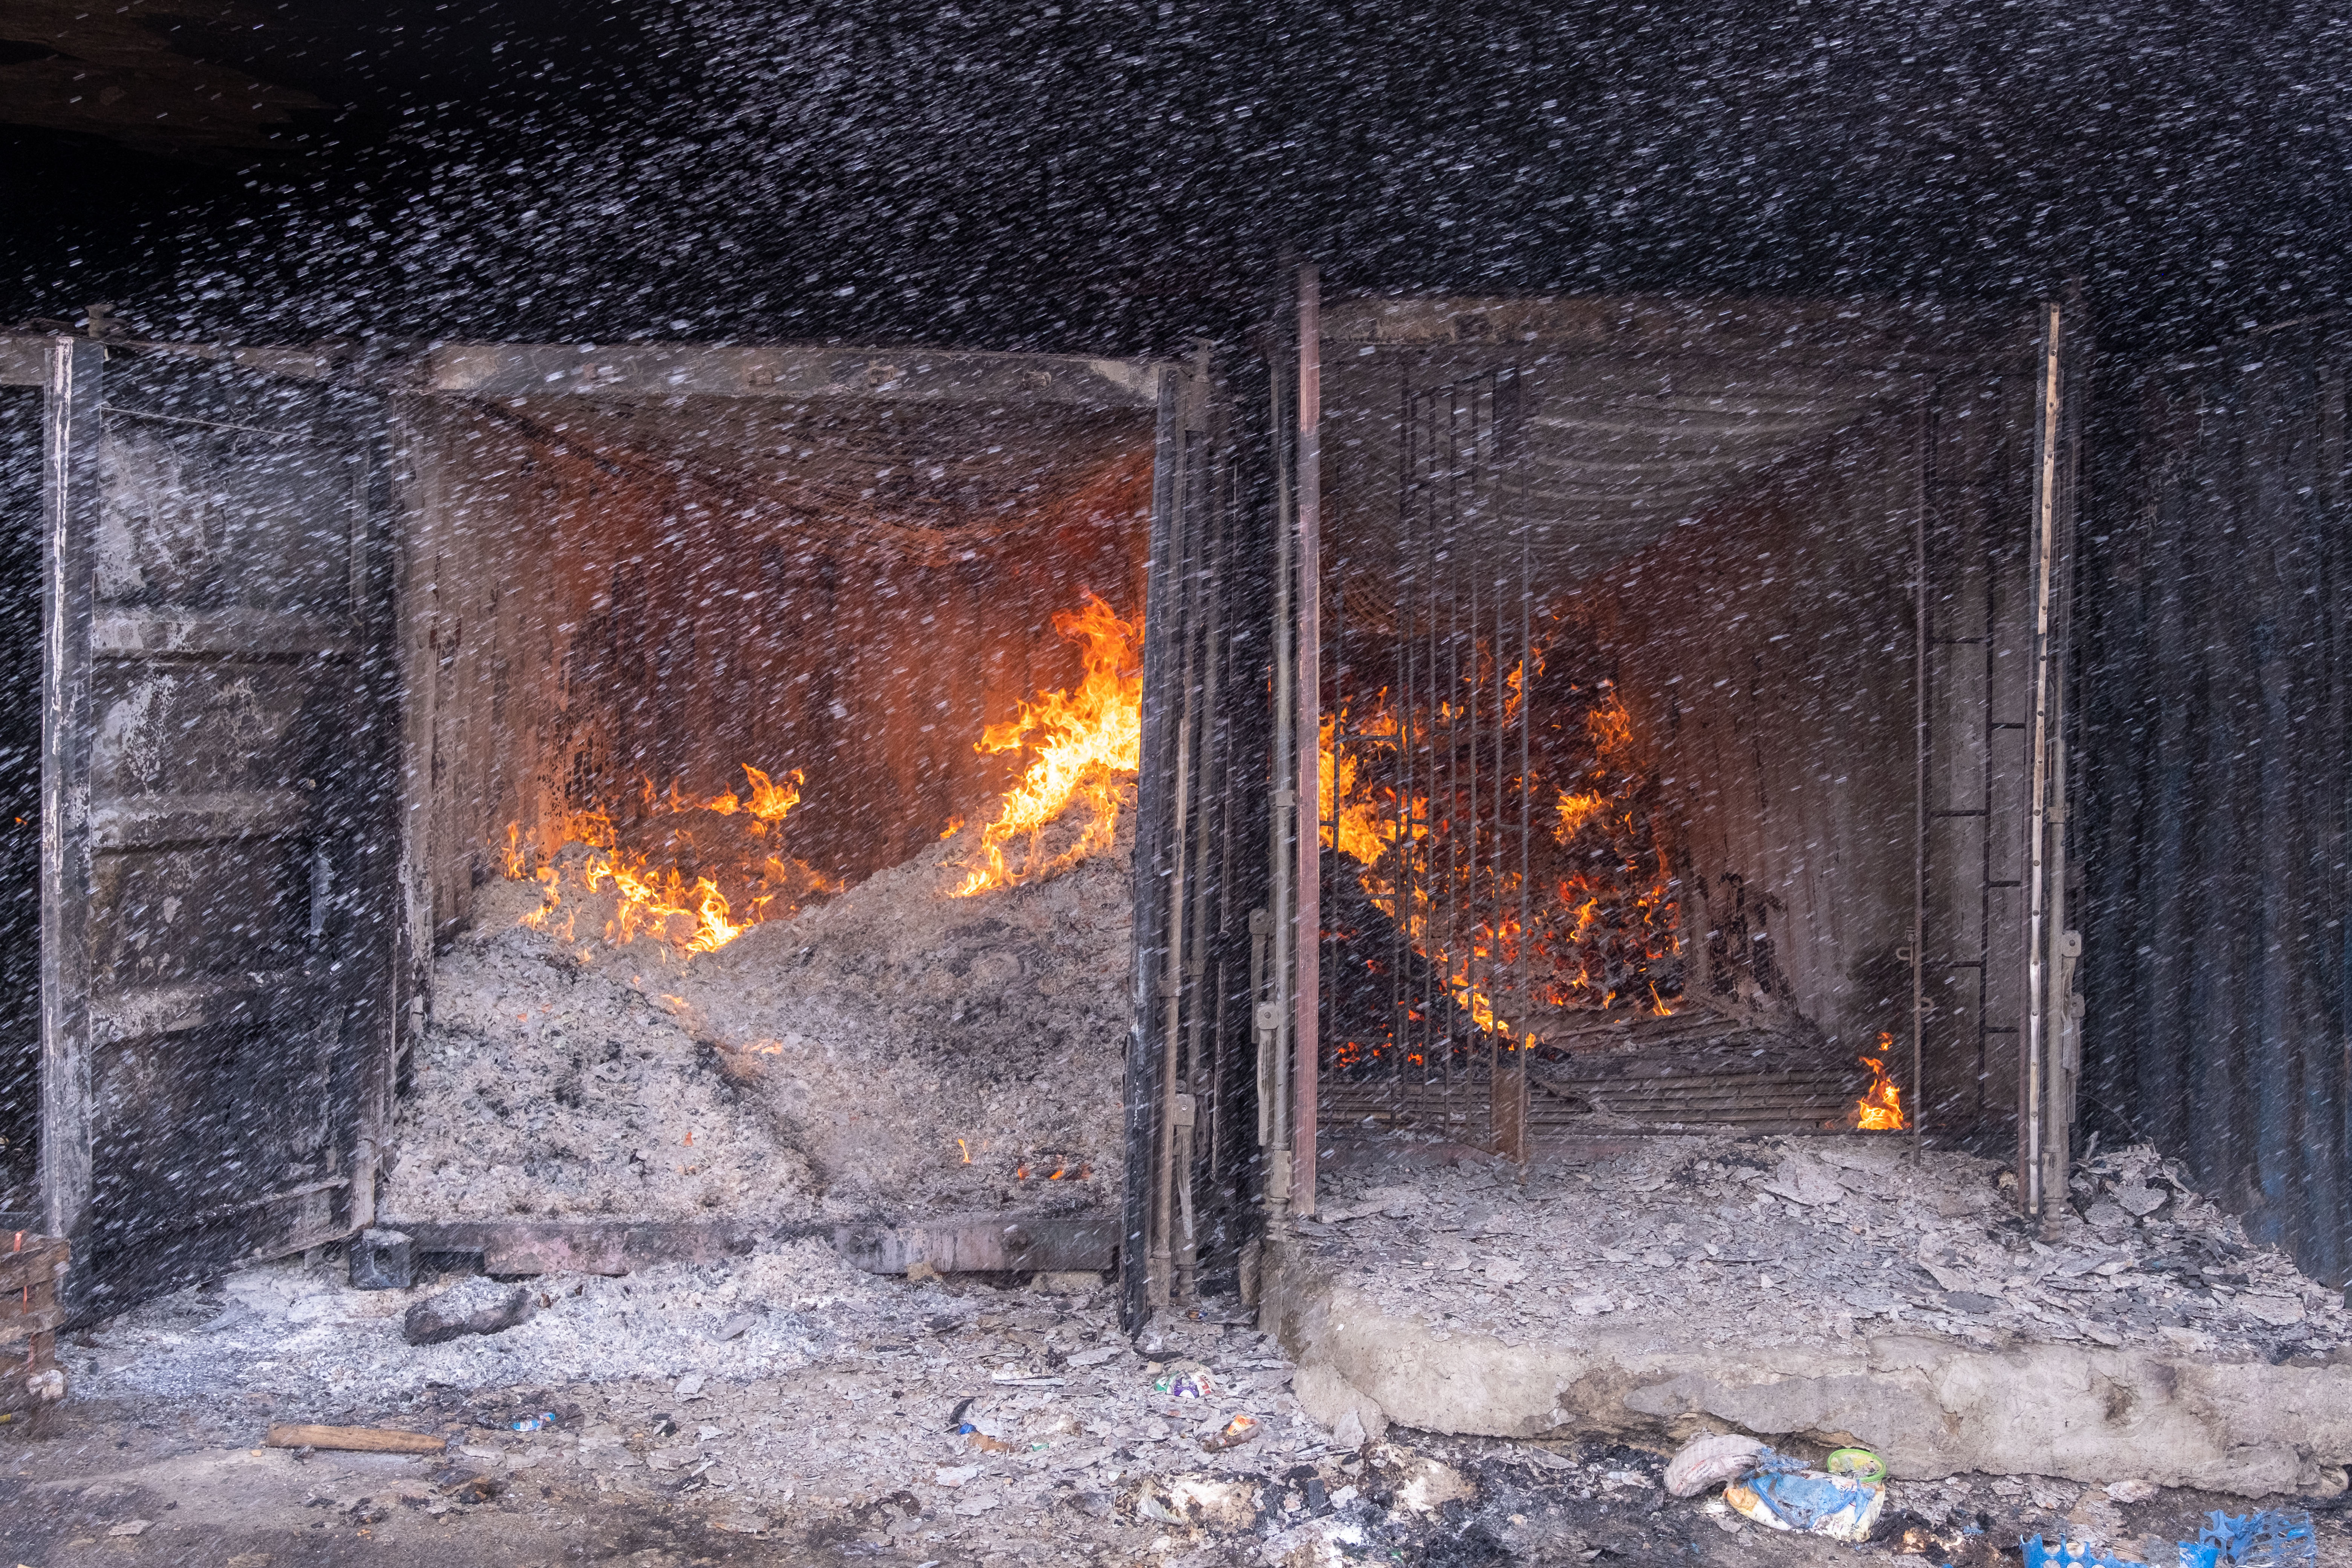 Al menos 110 muertos en la explosión de una refinería de petróleo ilegal en Nigeria